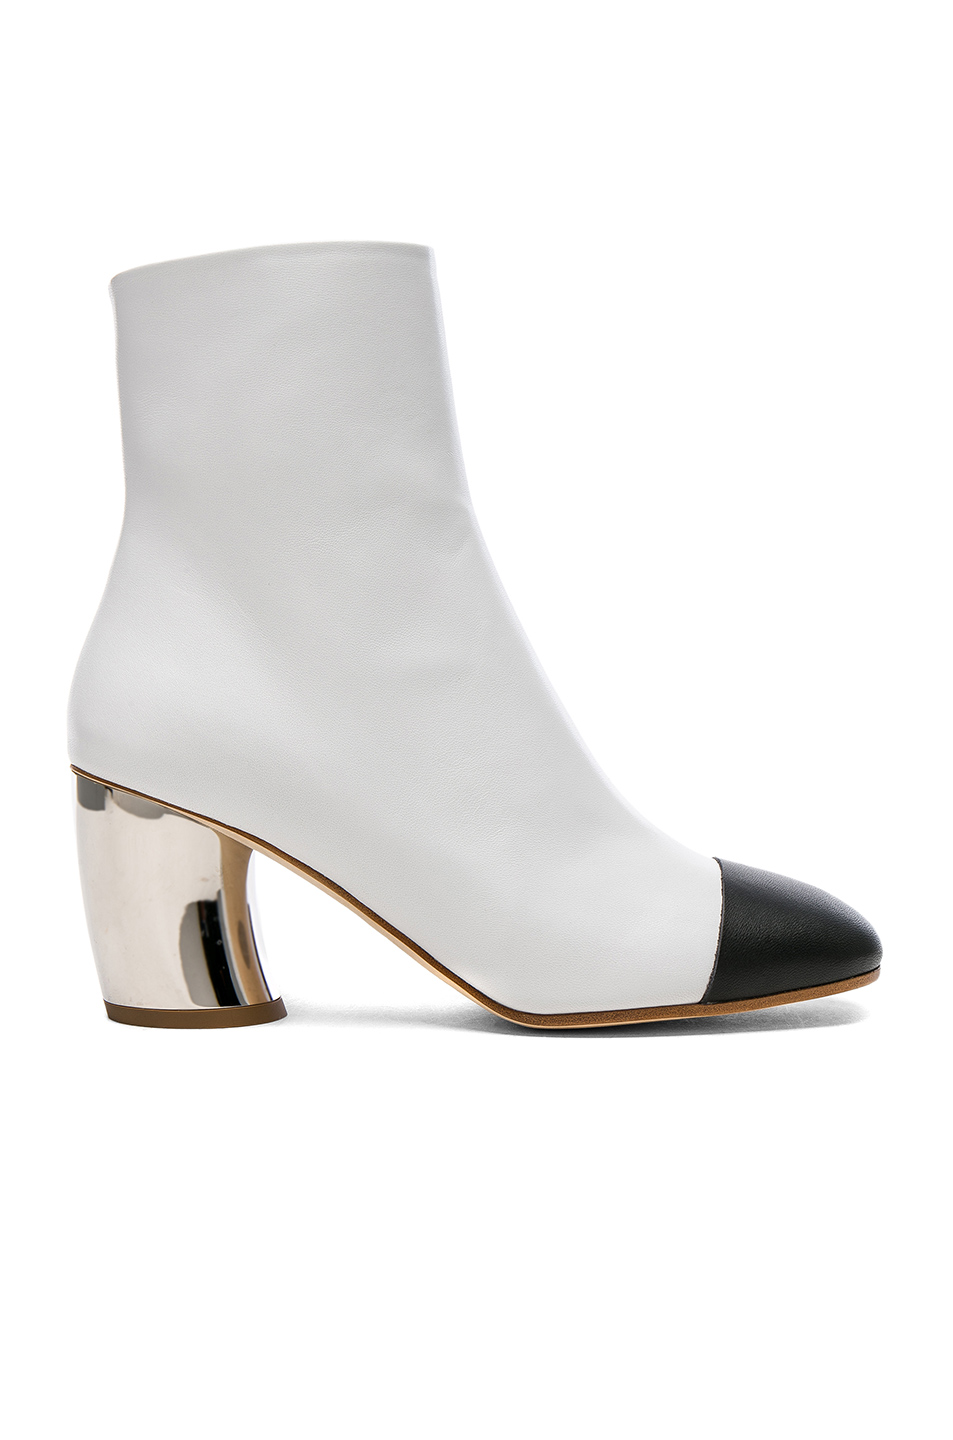 Proenza Schouler Cap-Toe Metallic-Heel Bootie, White | ModeSens